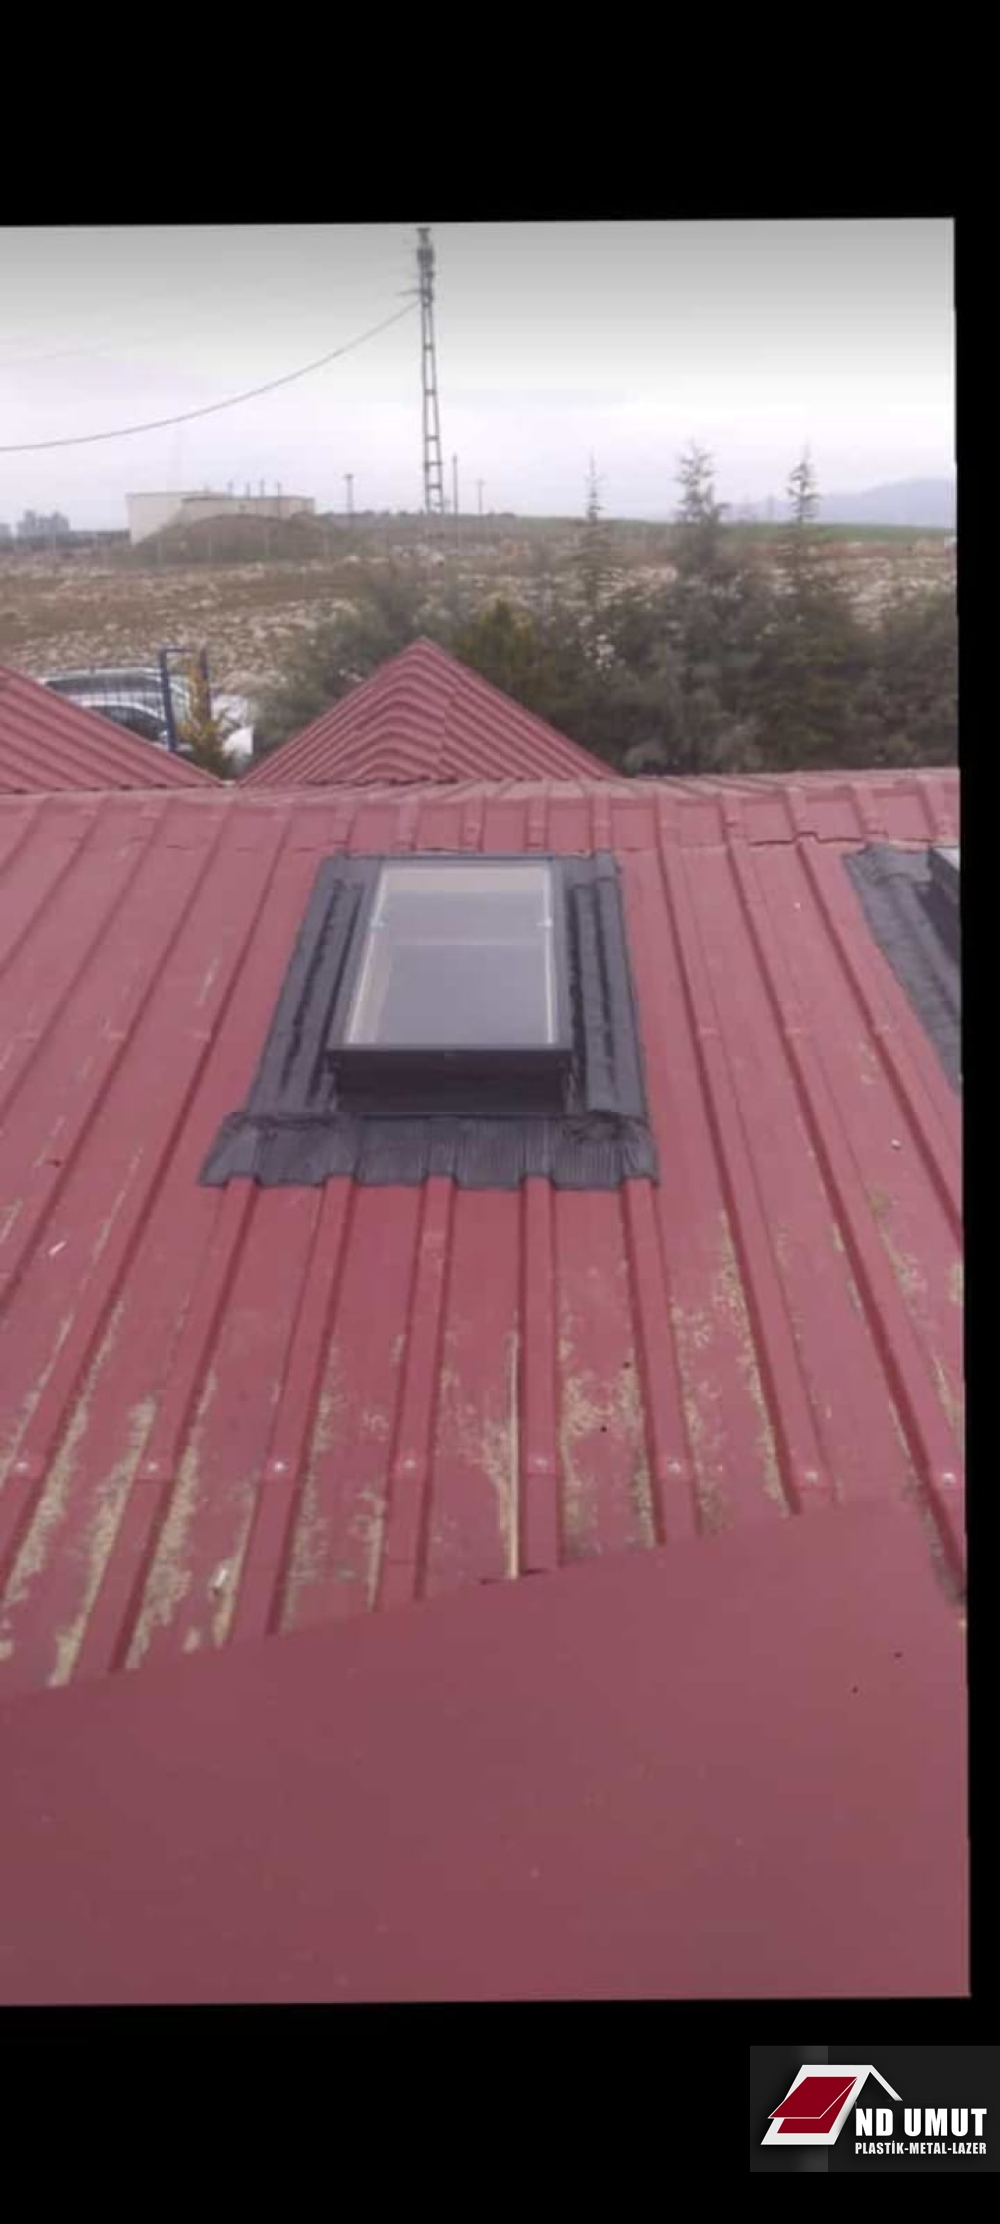 Trapez çatı penceresi örnek